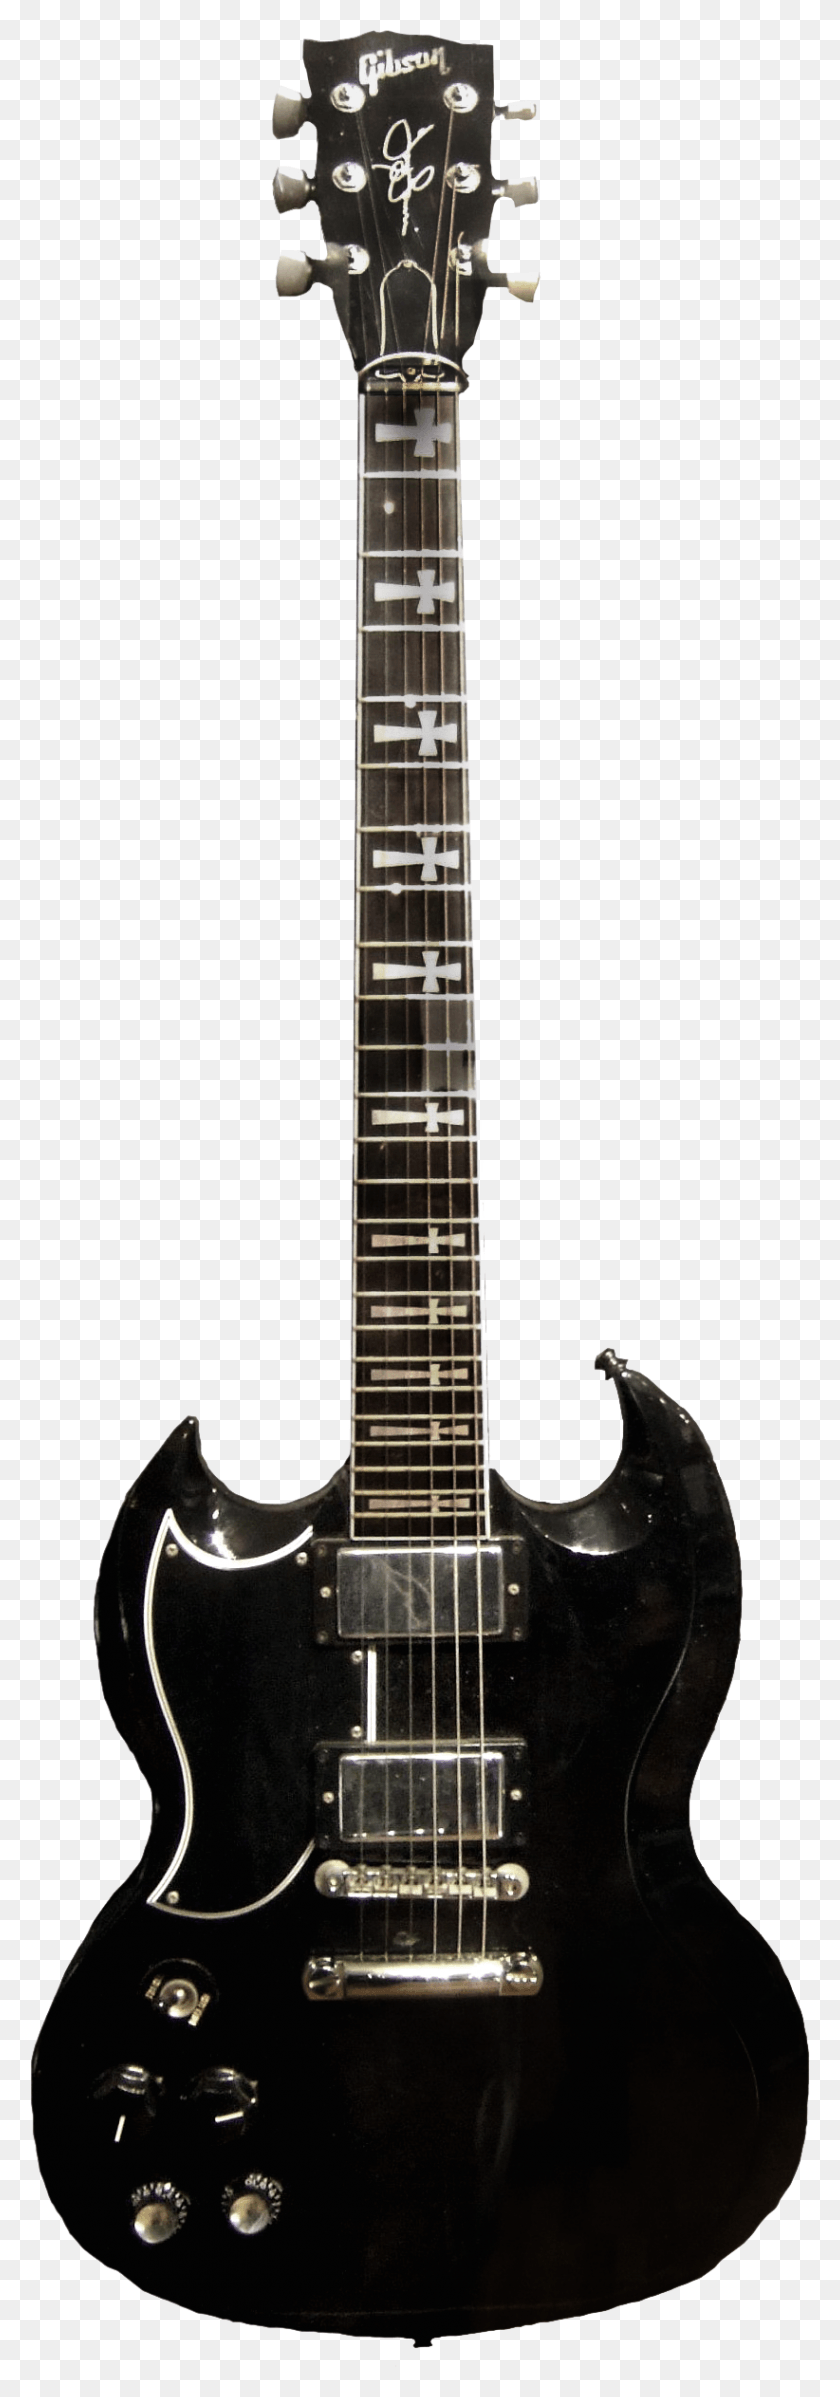 822x2463 Descargar Png Iommi Sg Guitarra Epiphone Sheraton Ii Pro Black, Guitarra Eléctrica, Actividades De Ocio, Instrumento Musical Hd Png